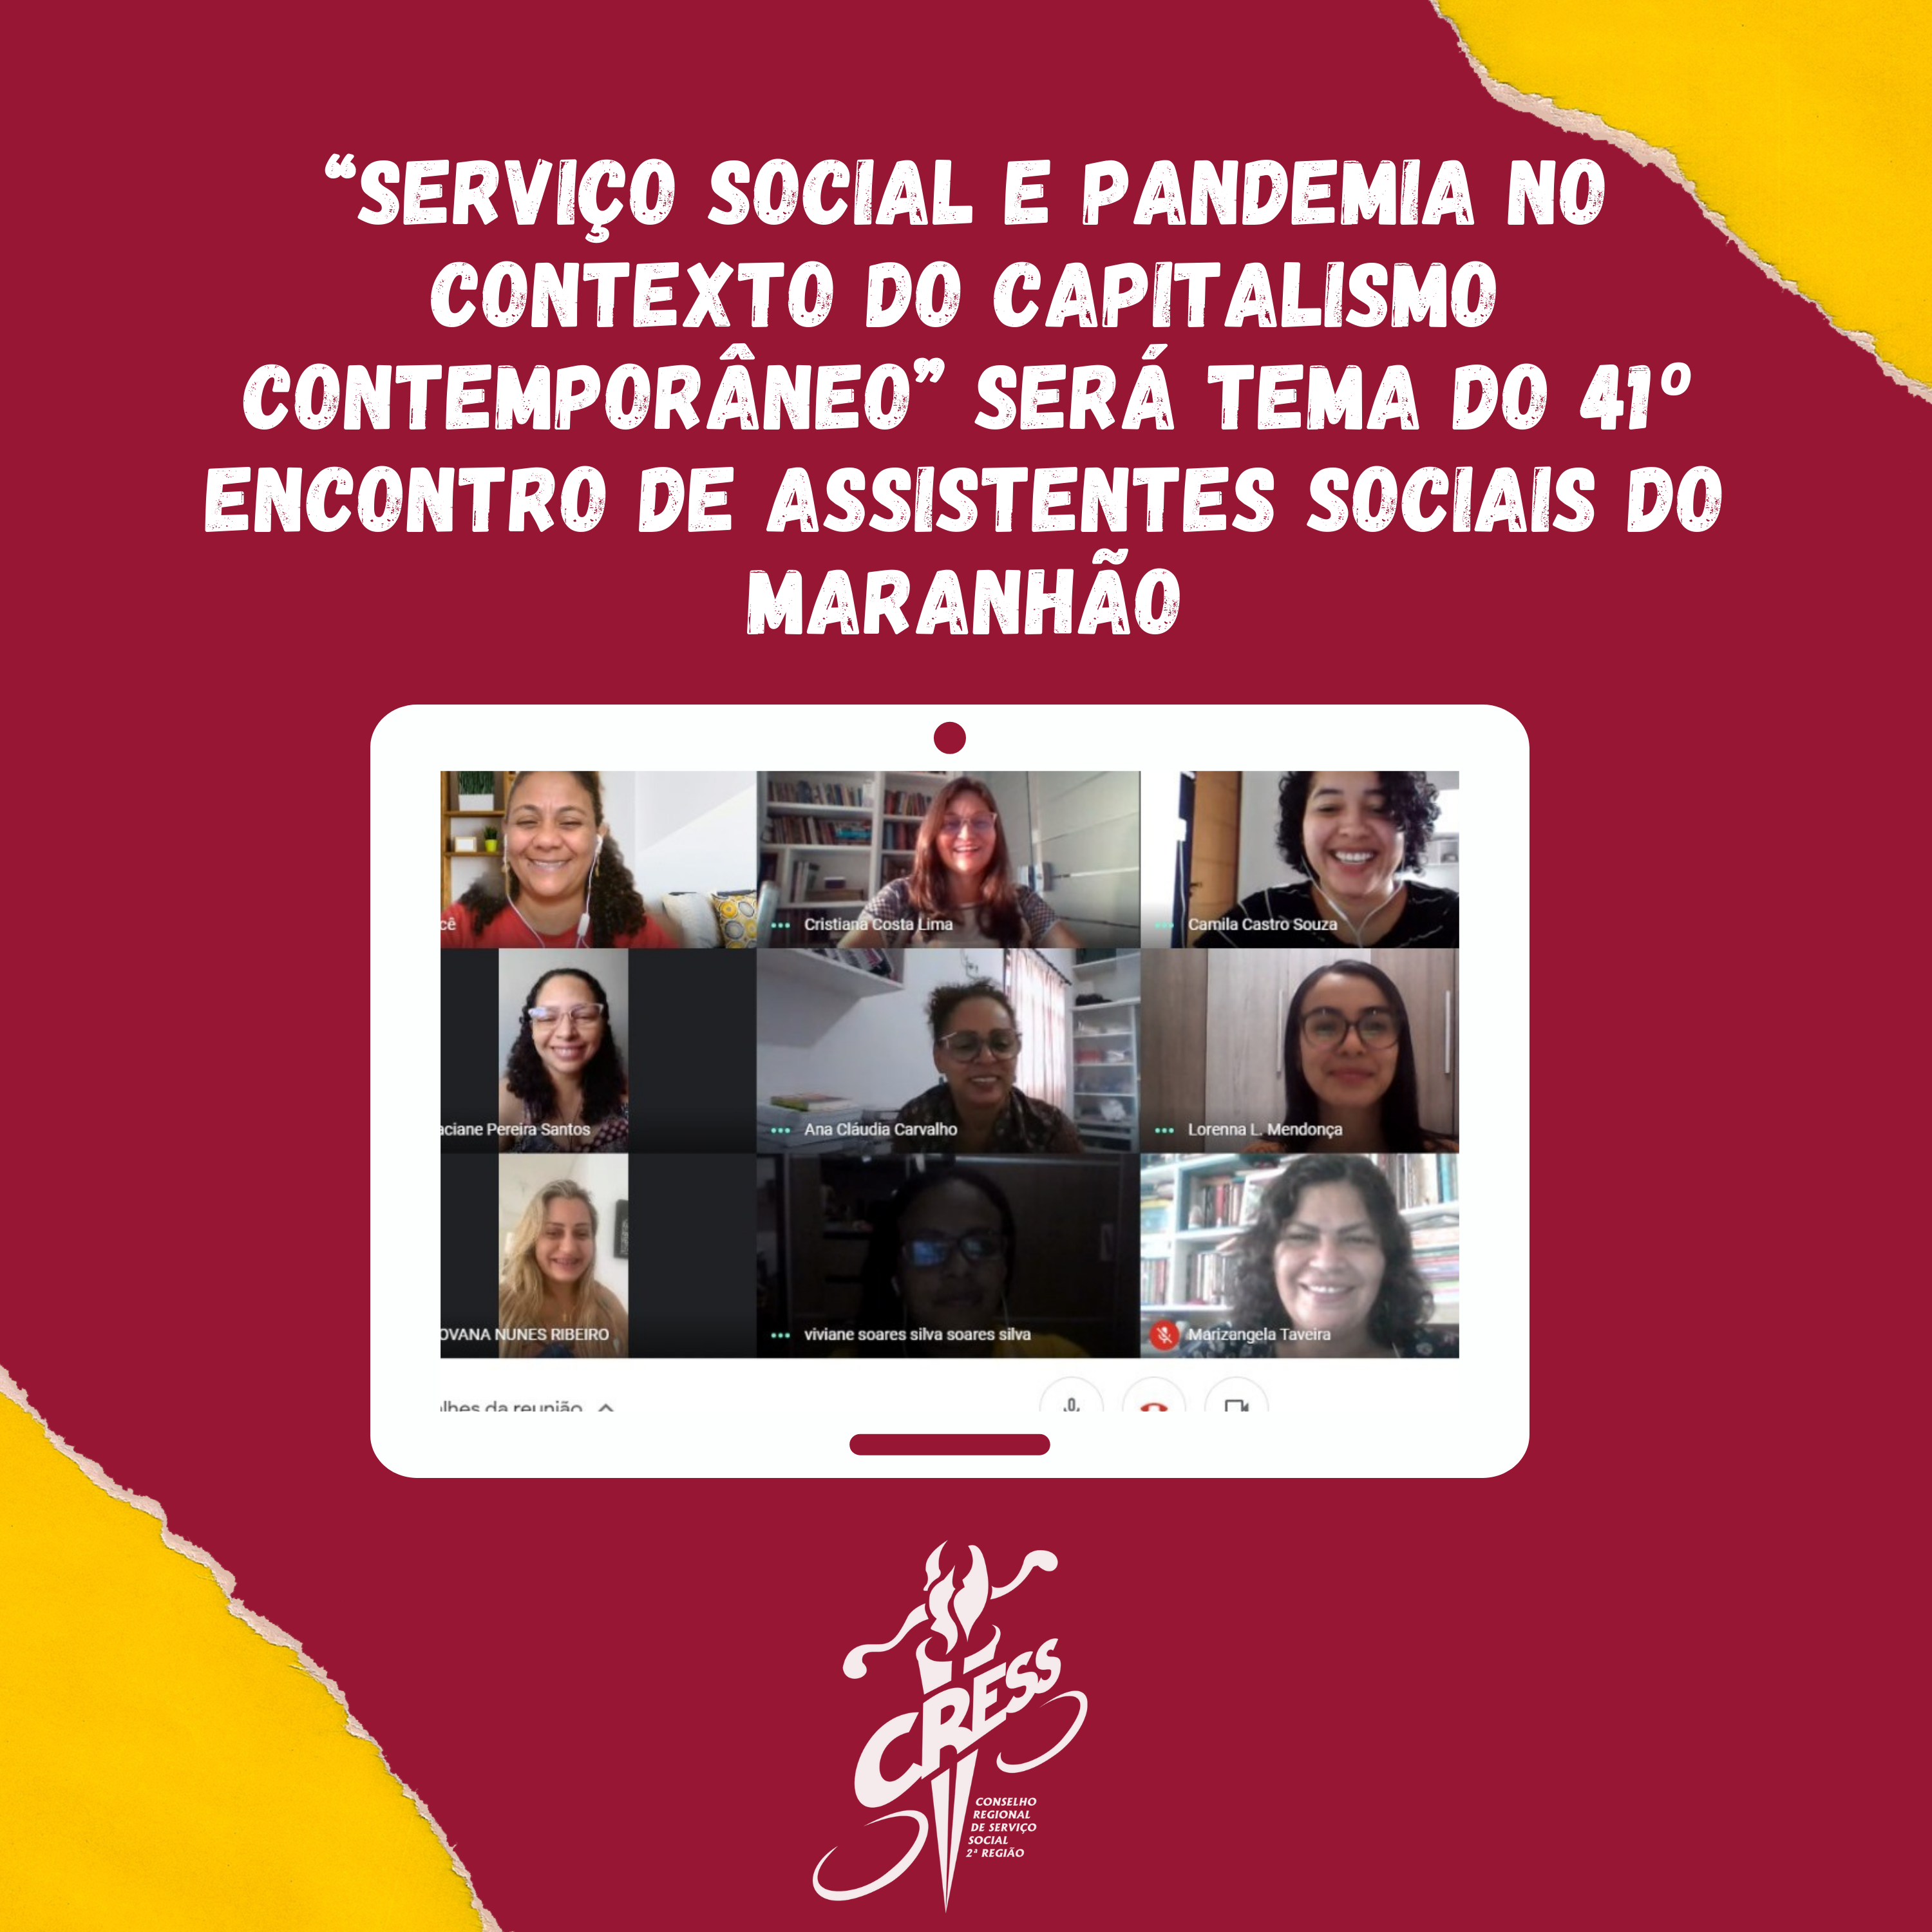 “Serviço Social e Pandemia no contexto do capitalismo contemporâneo” será tema do 41º Encontro de Assistentes Sociais do Maranhão (1)